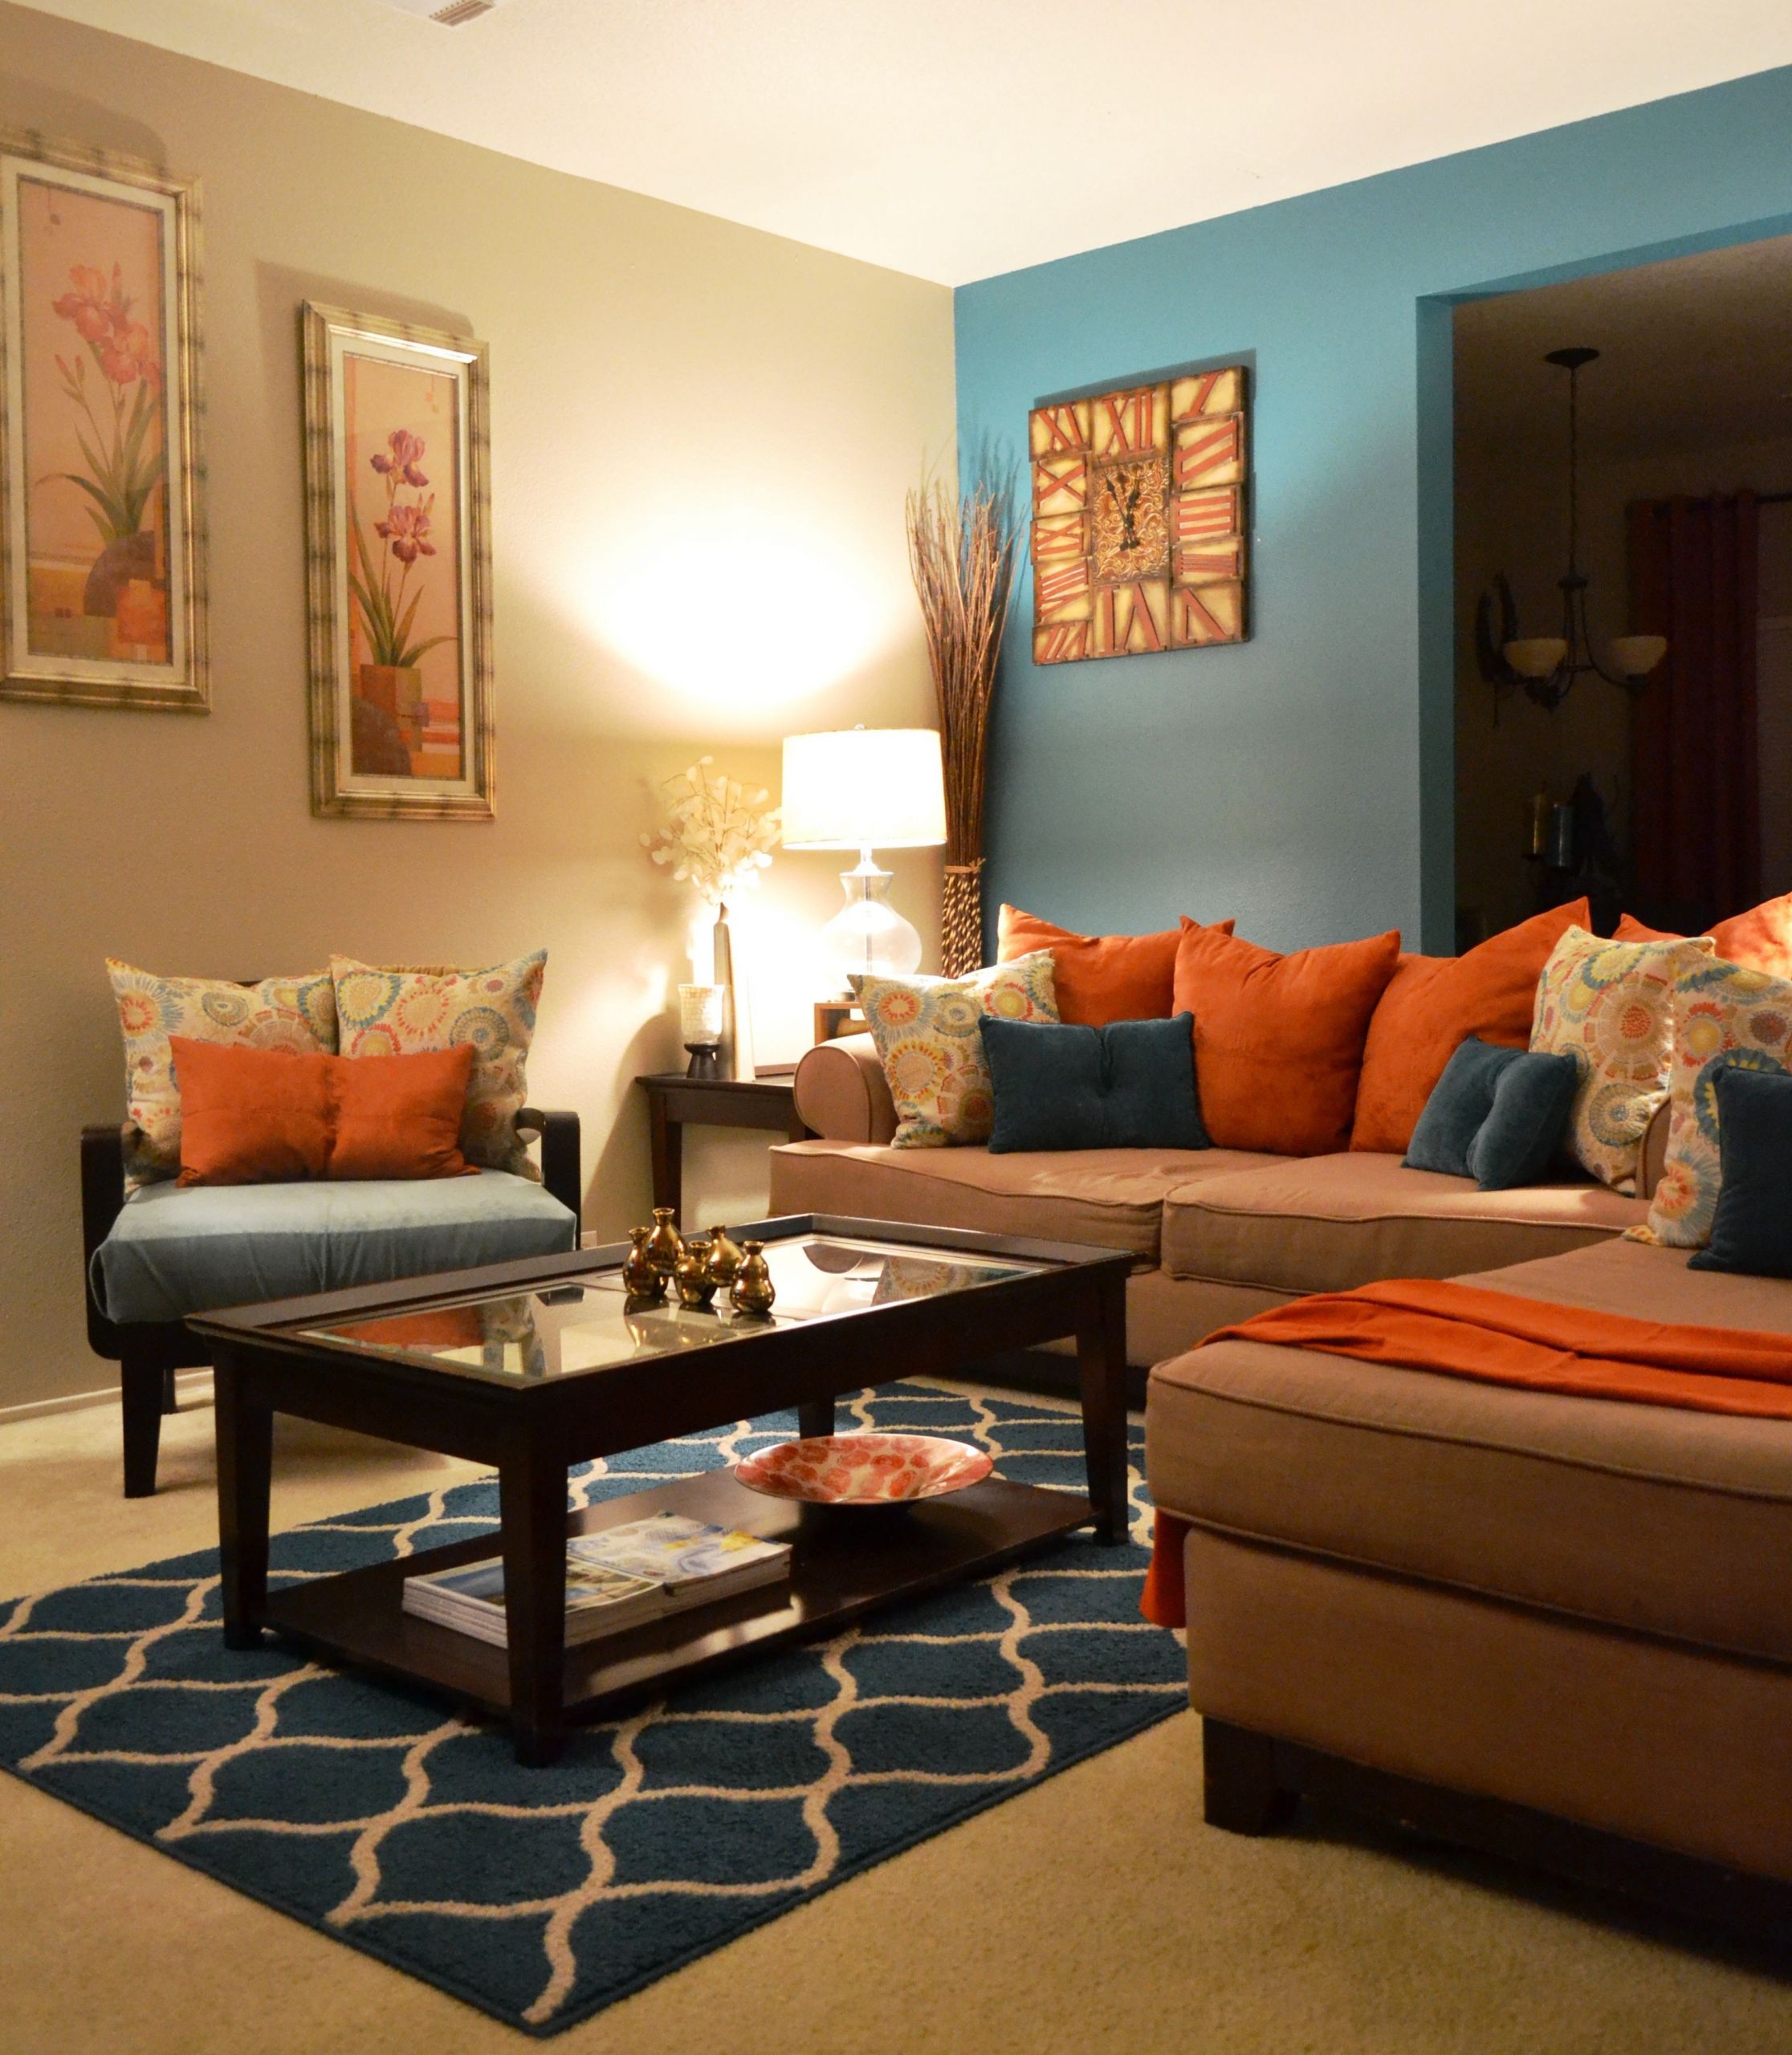 Burnt Orange Living Room Ideas
 rugs coffee table pillows teal orange living room